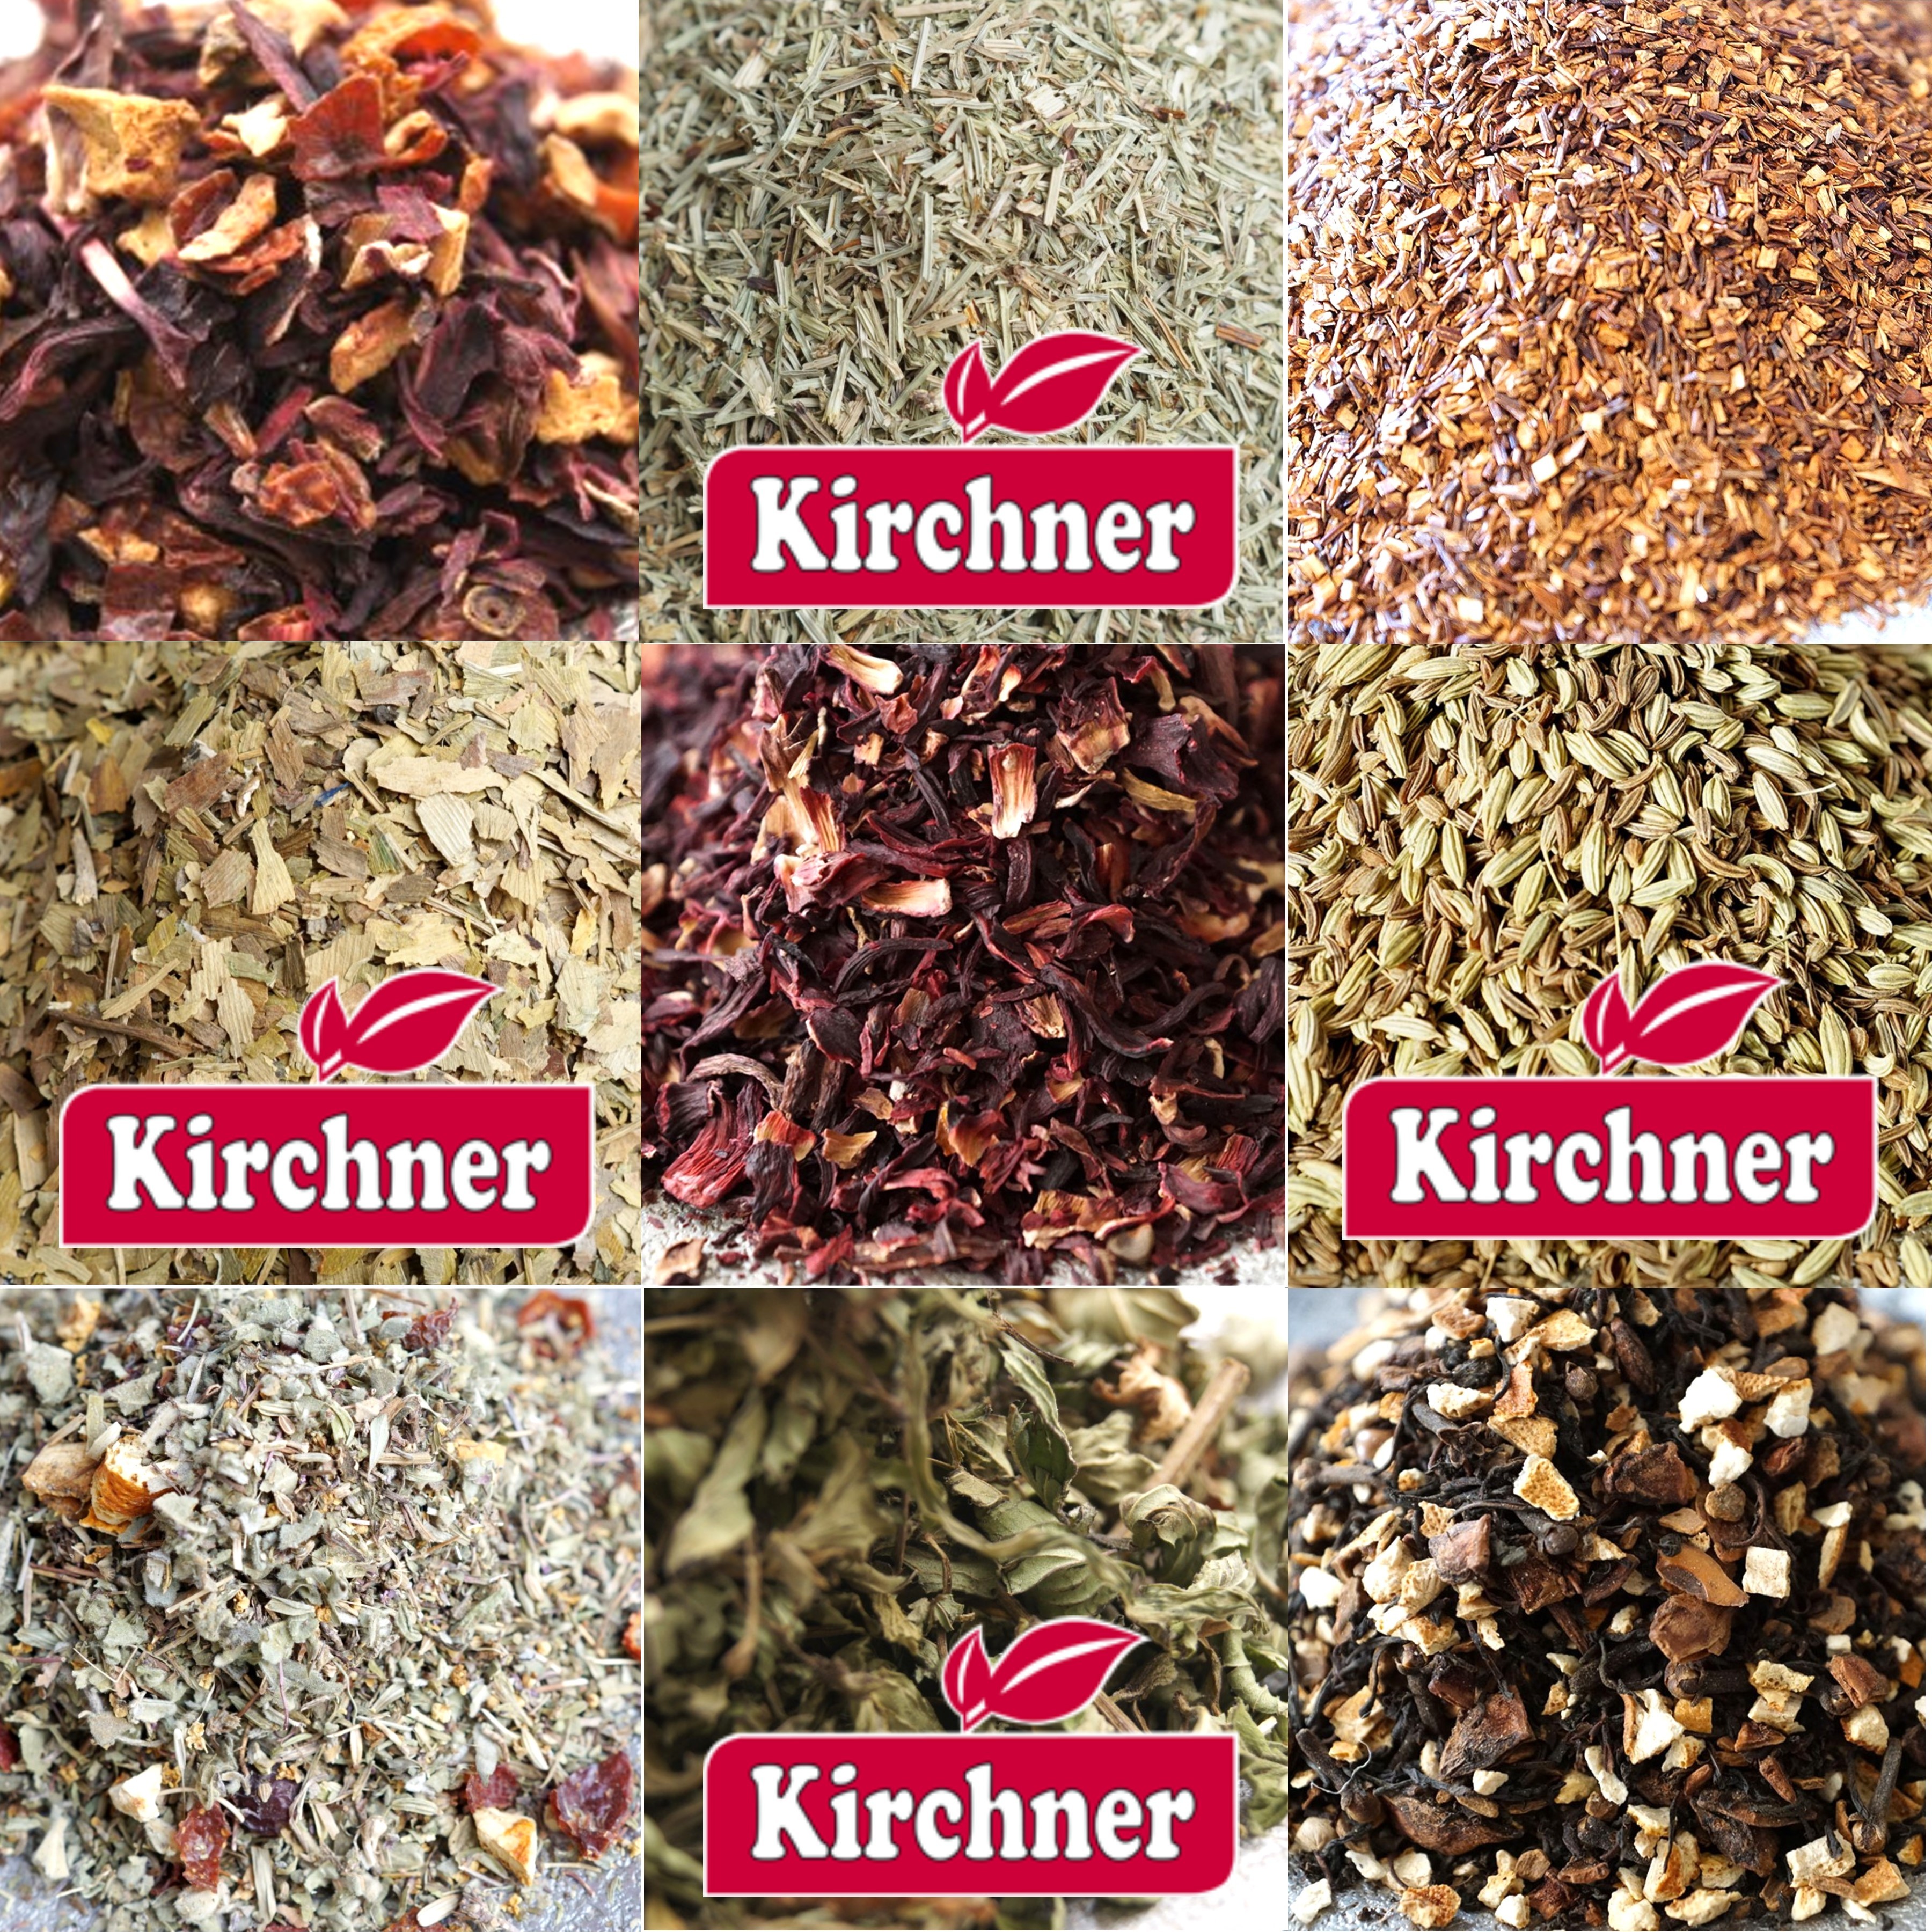 Kirchner-Tee-kaufen-in-Grabos-Online-Shop